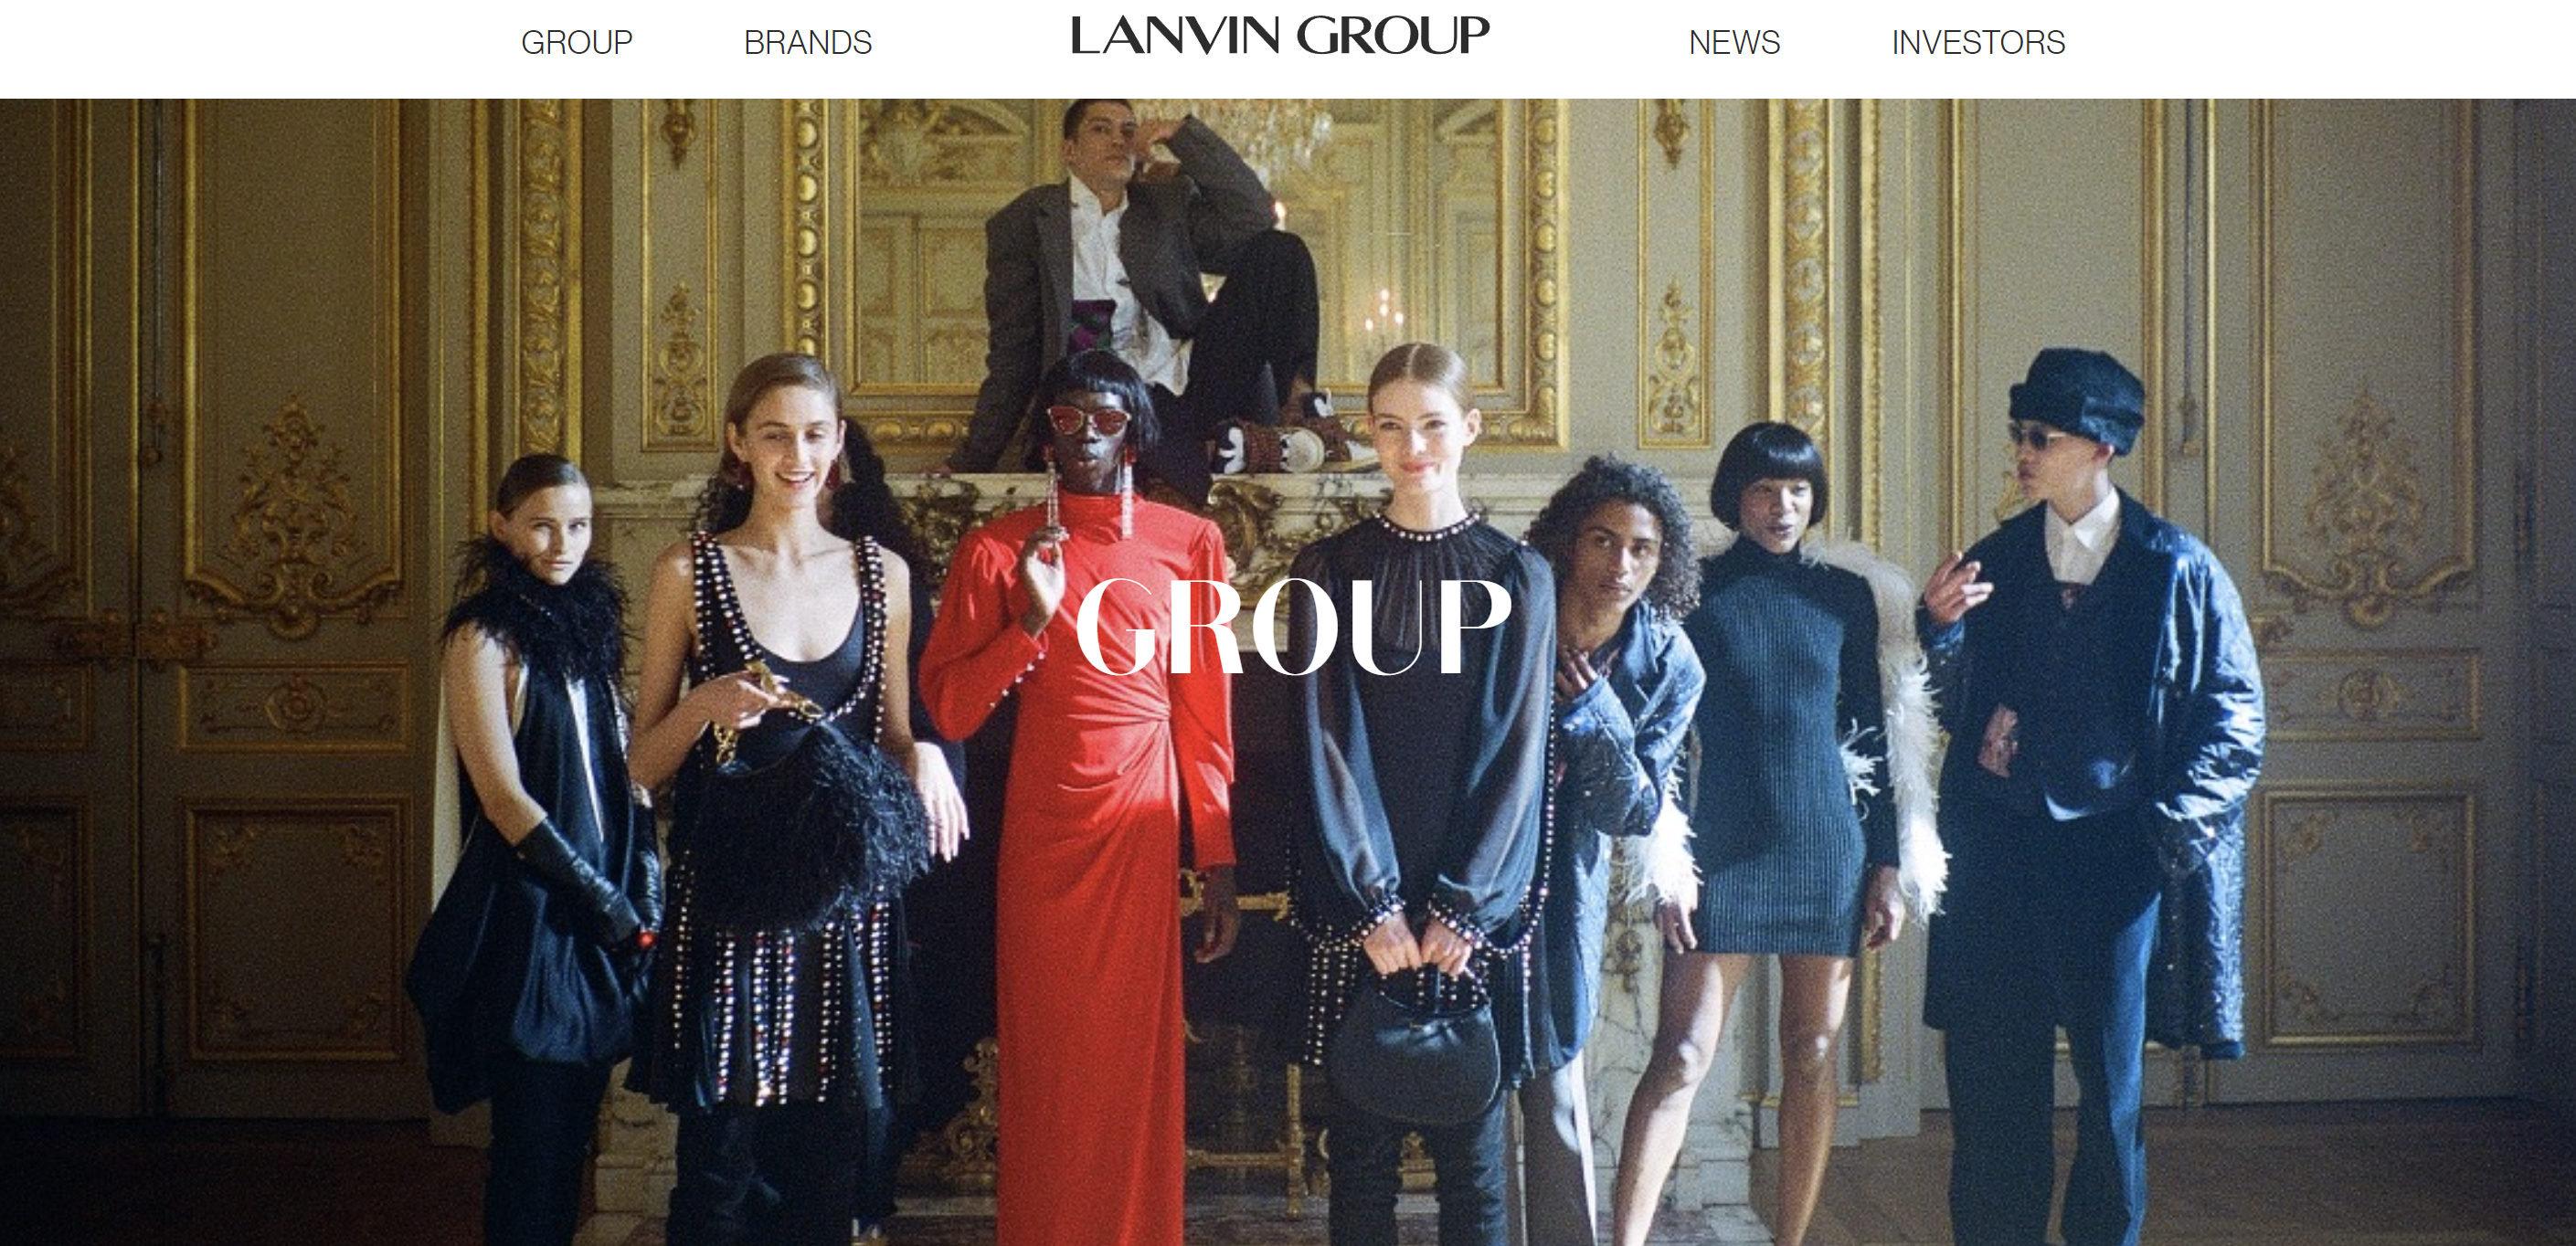 复星旗下奢侈品集团 Lanvin Group 上半年营收大增73%至2.02亿欧元，整体估值调整为10亿美元